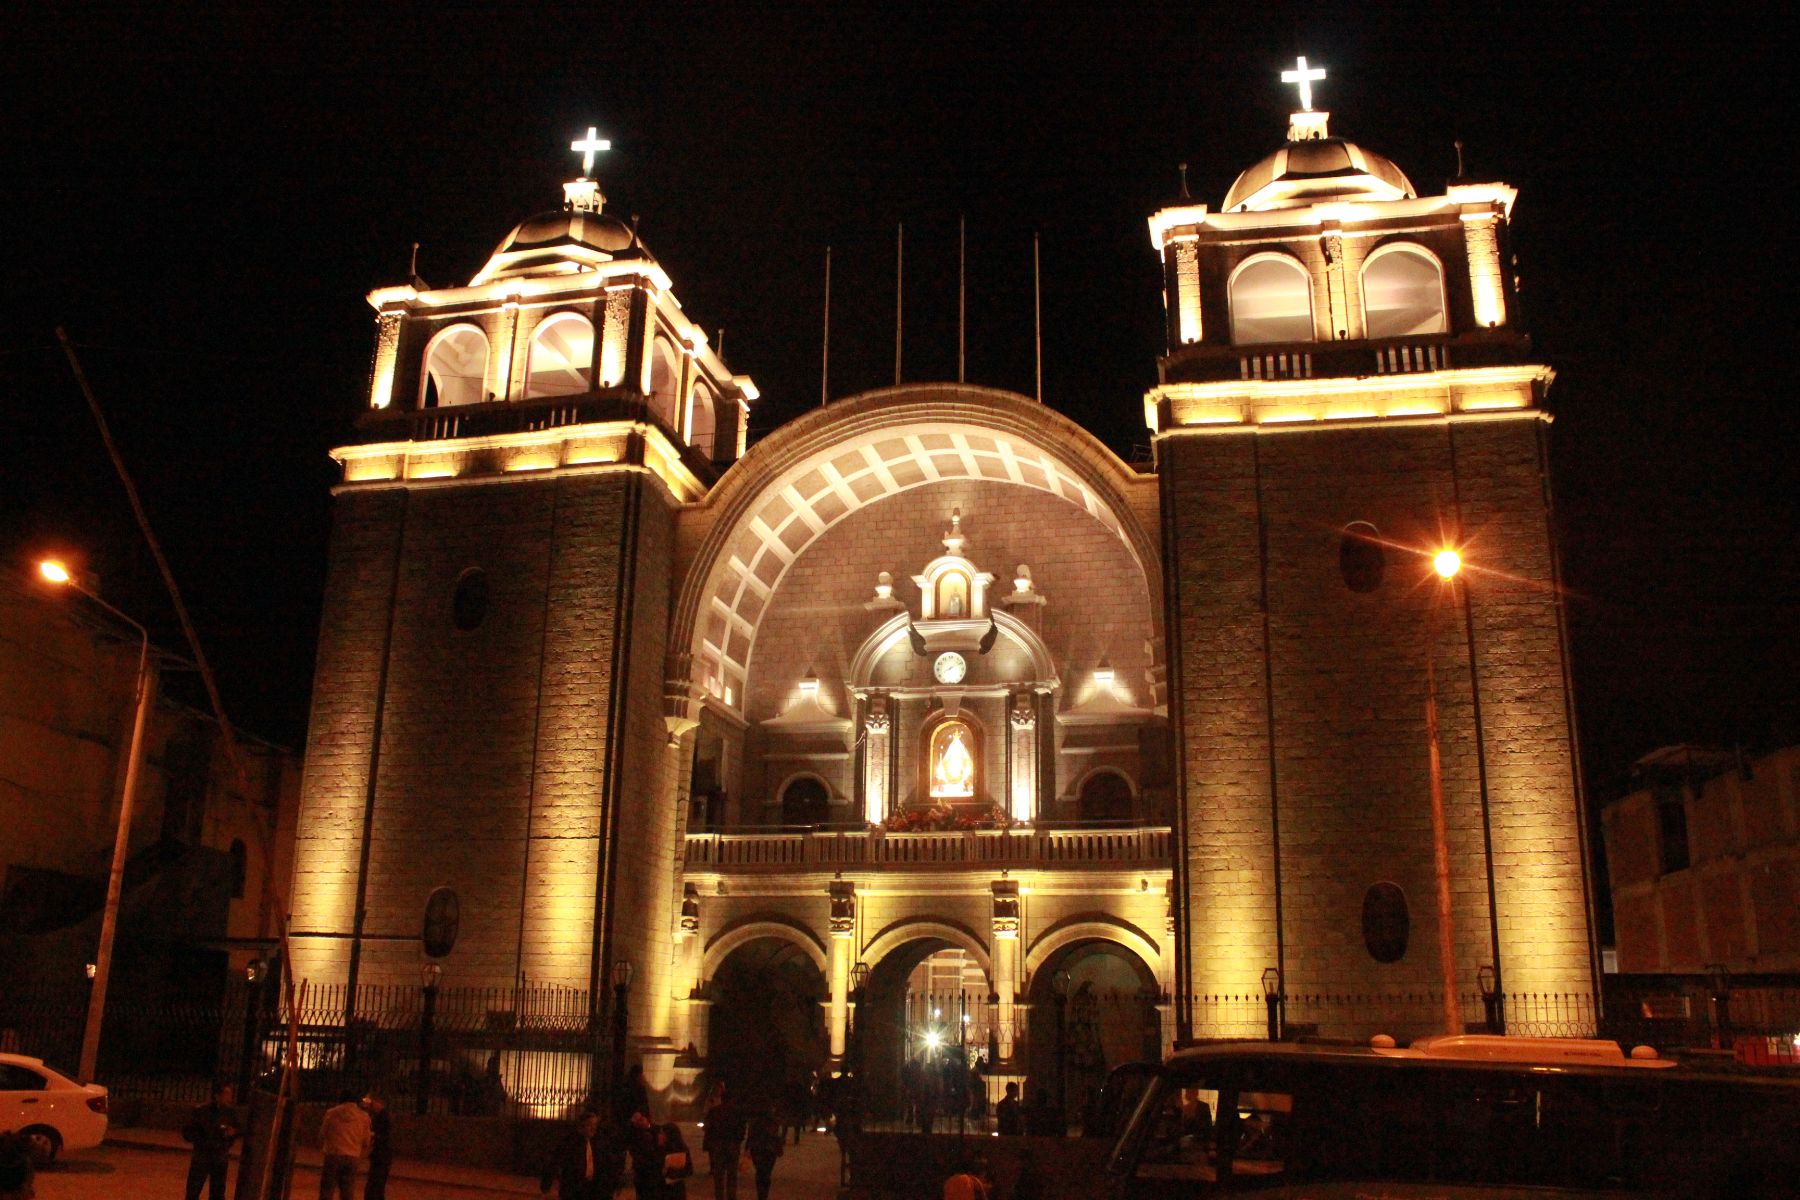 Iluminación destaca arquitectura de santuario de Virgen de la Puerta de Otuzco. Foto: Arzobispado de Trujillo.